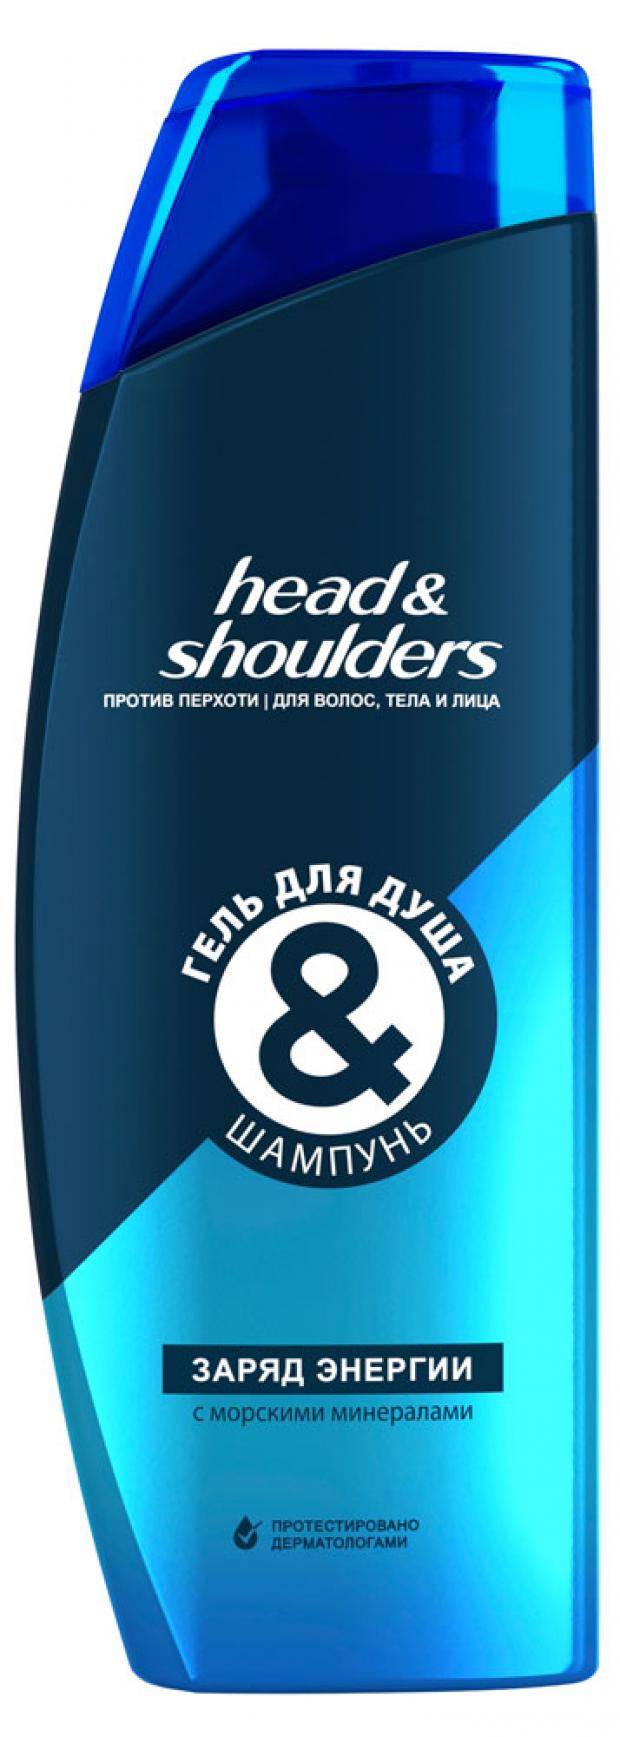 HEAD & SHOULDERS Гель для душа + шампунь Заряд энергии 360мл